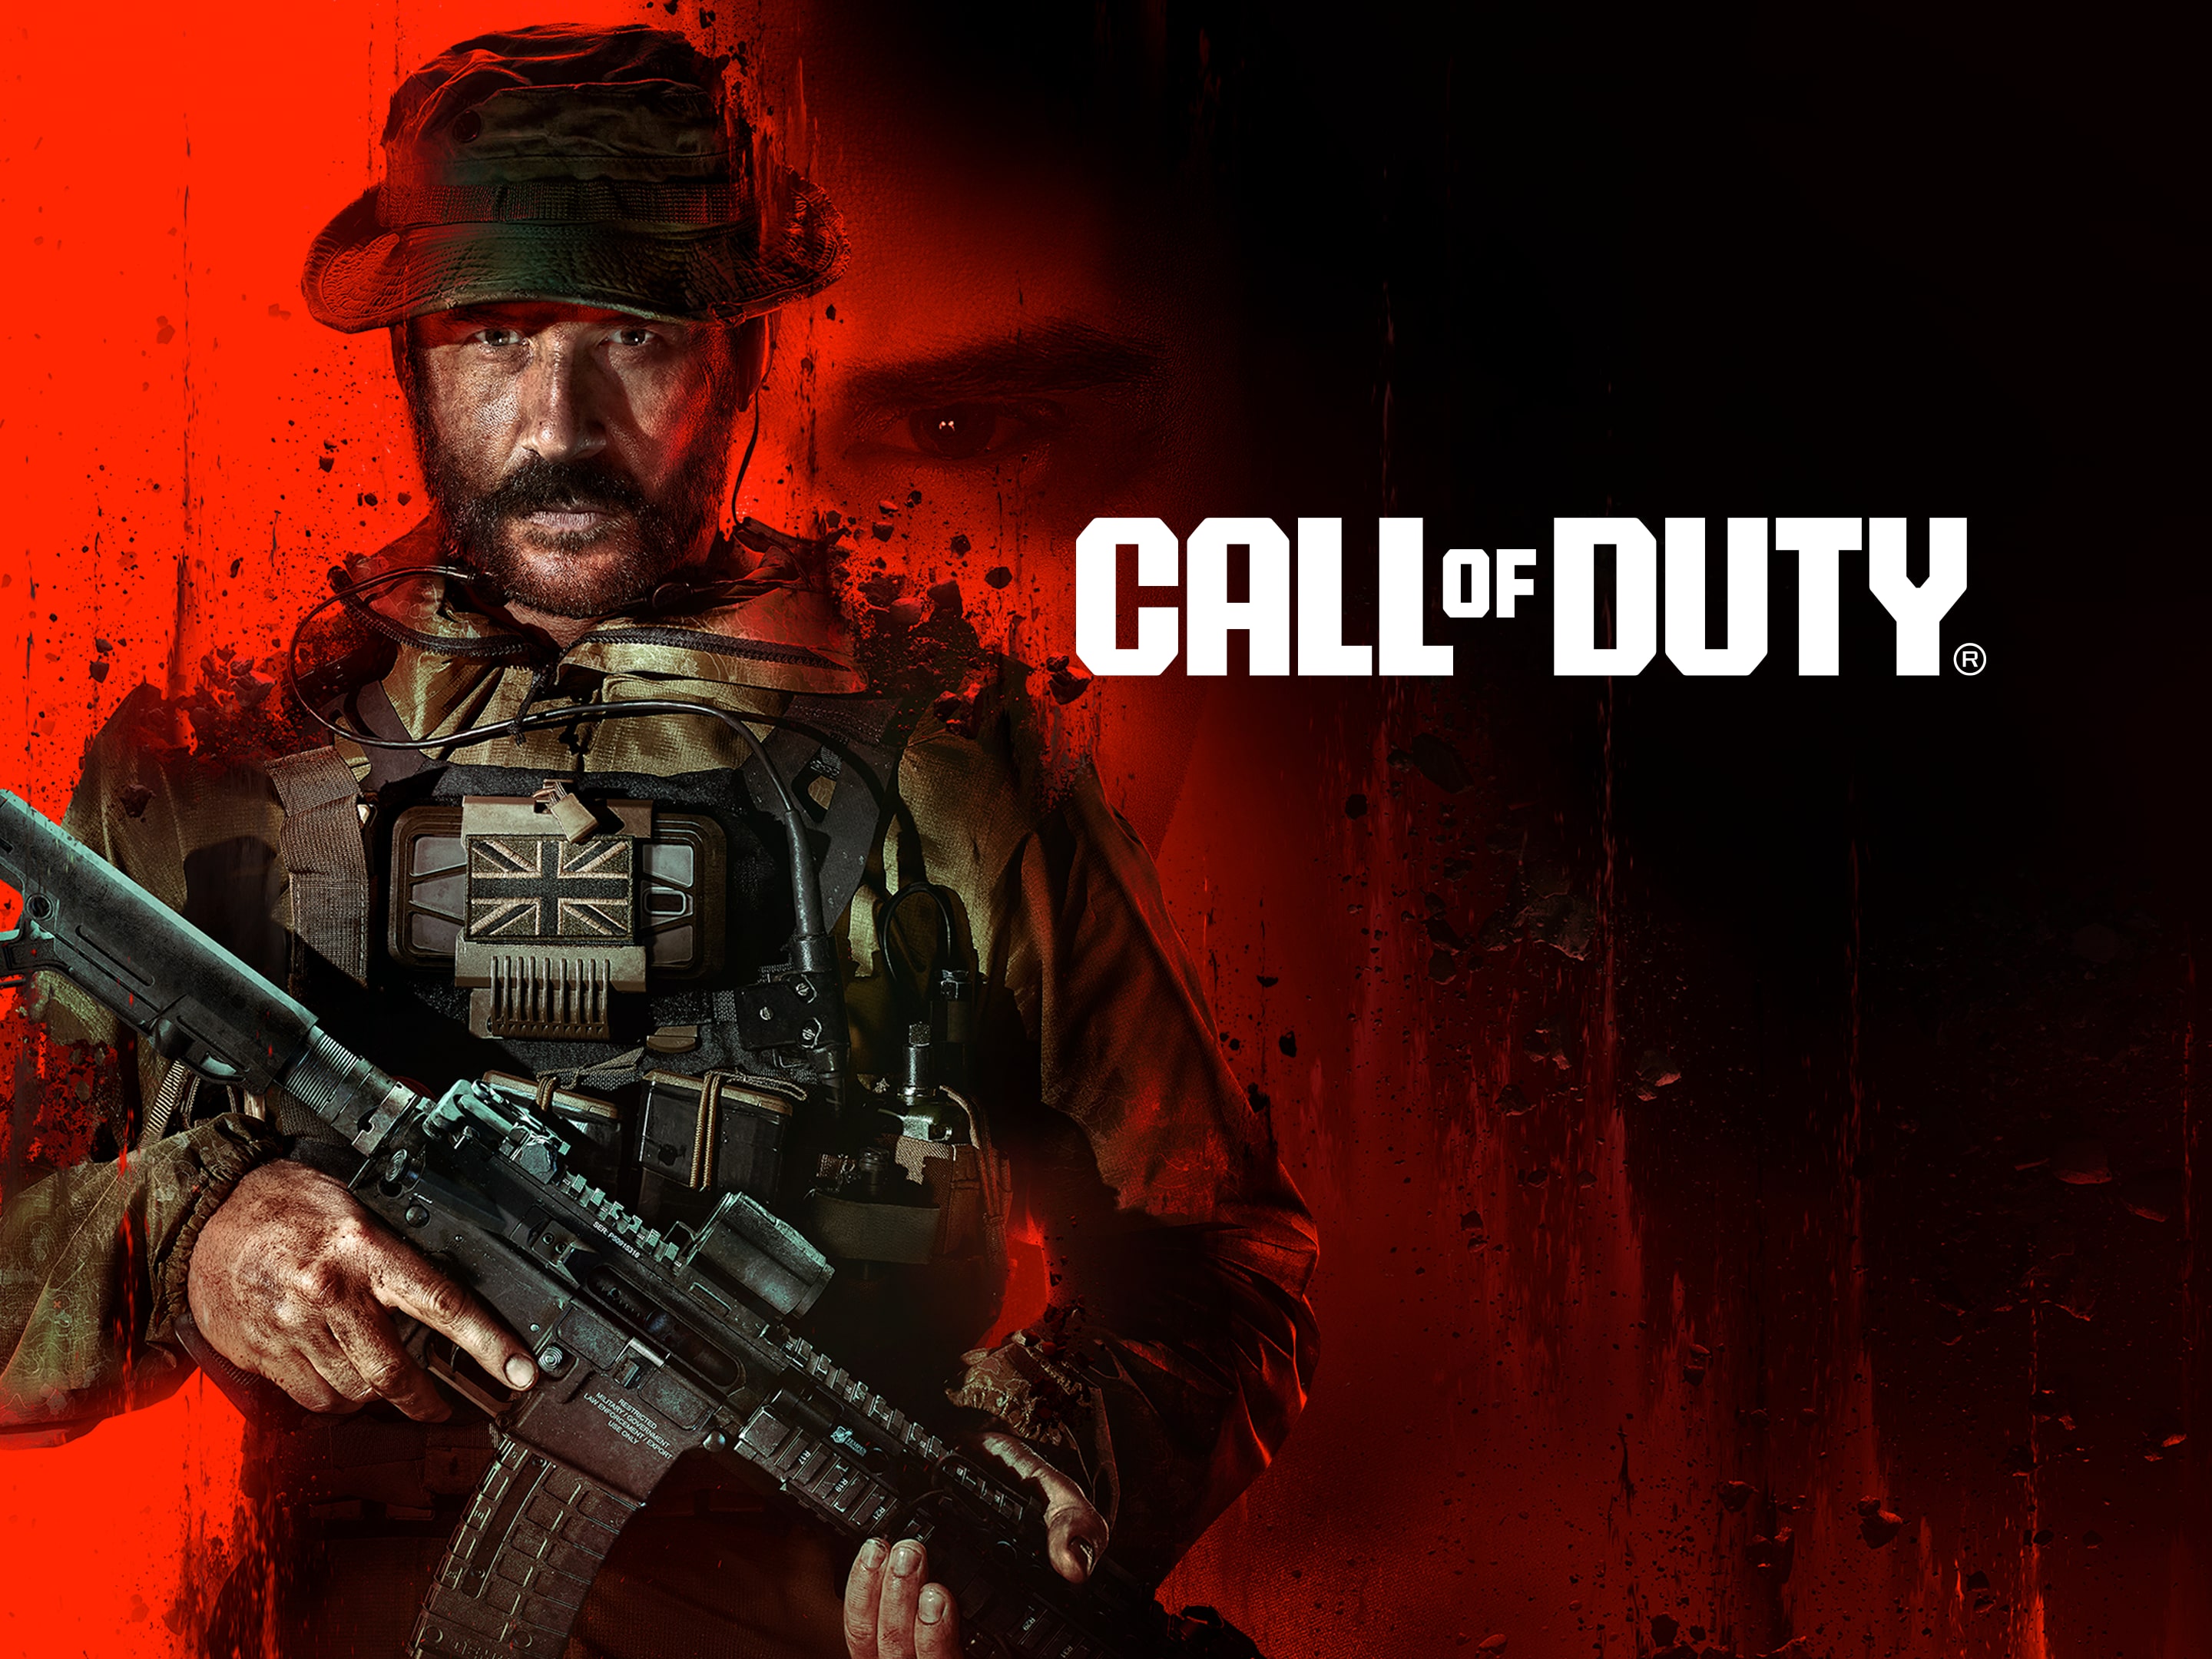 Call of Duty: Modern Warfare III Cross-Gen Bundle Edition